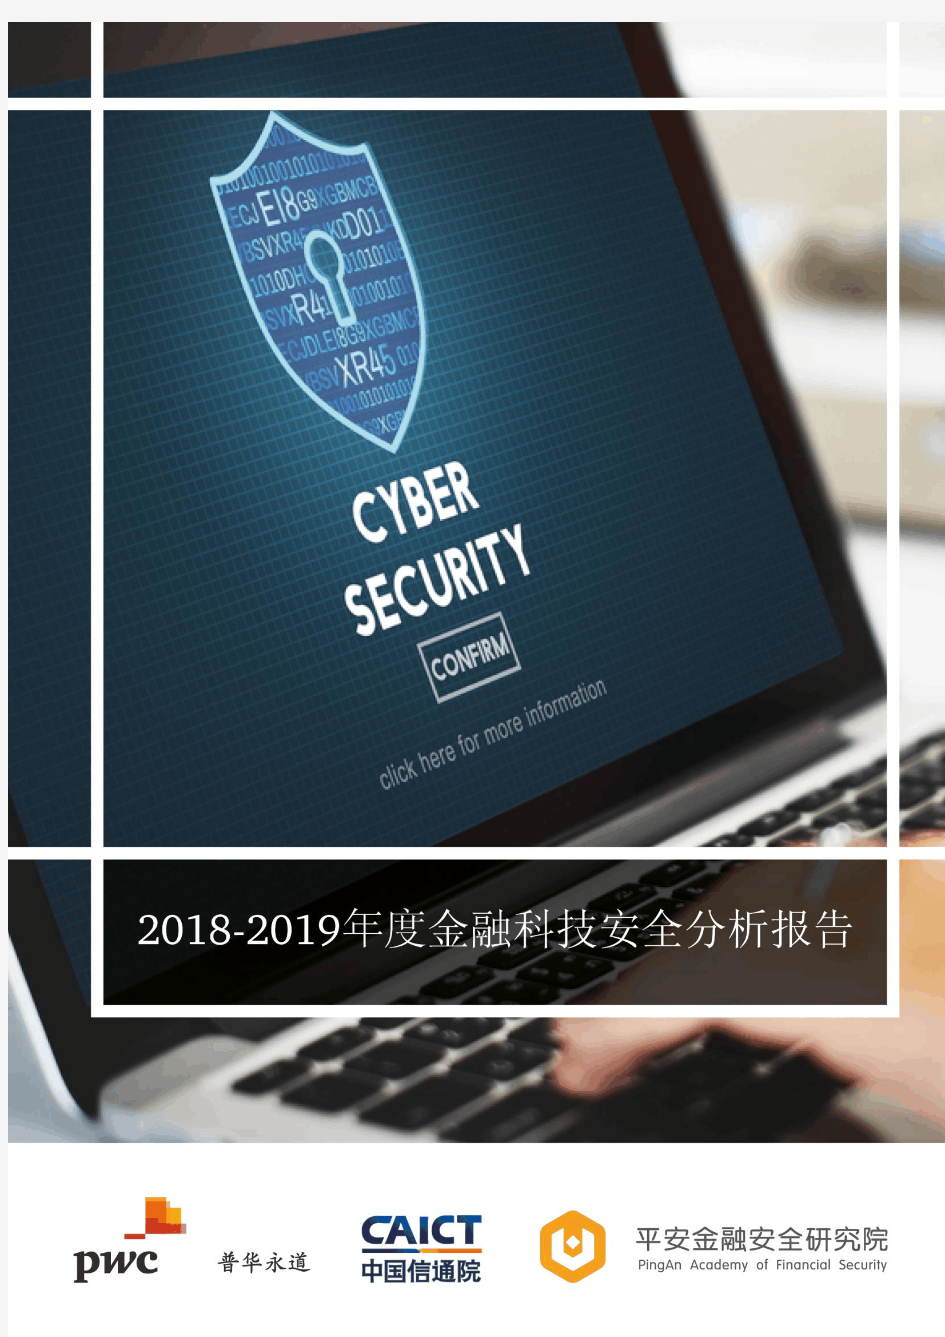 2018-2019年度金融科技安全分析报告